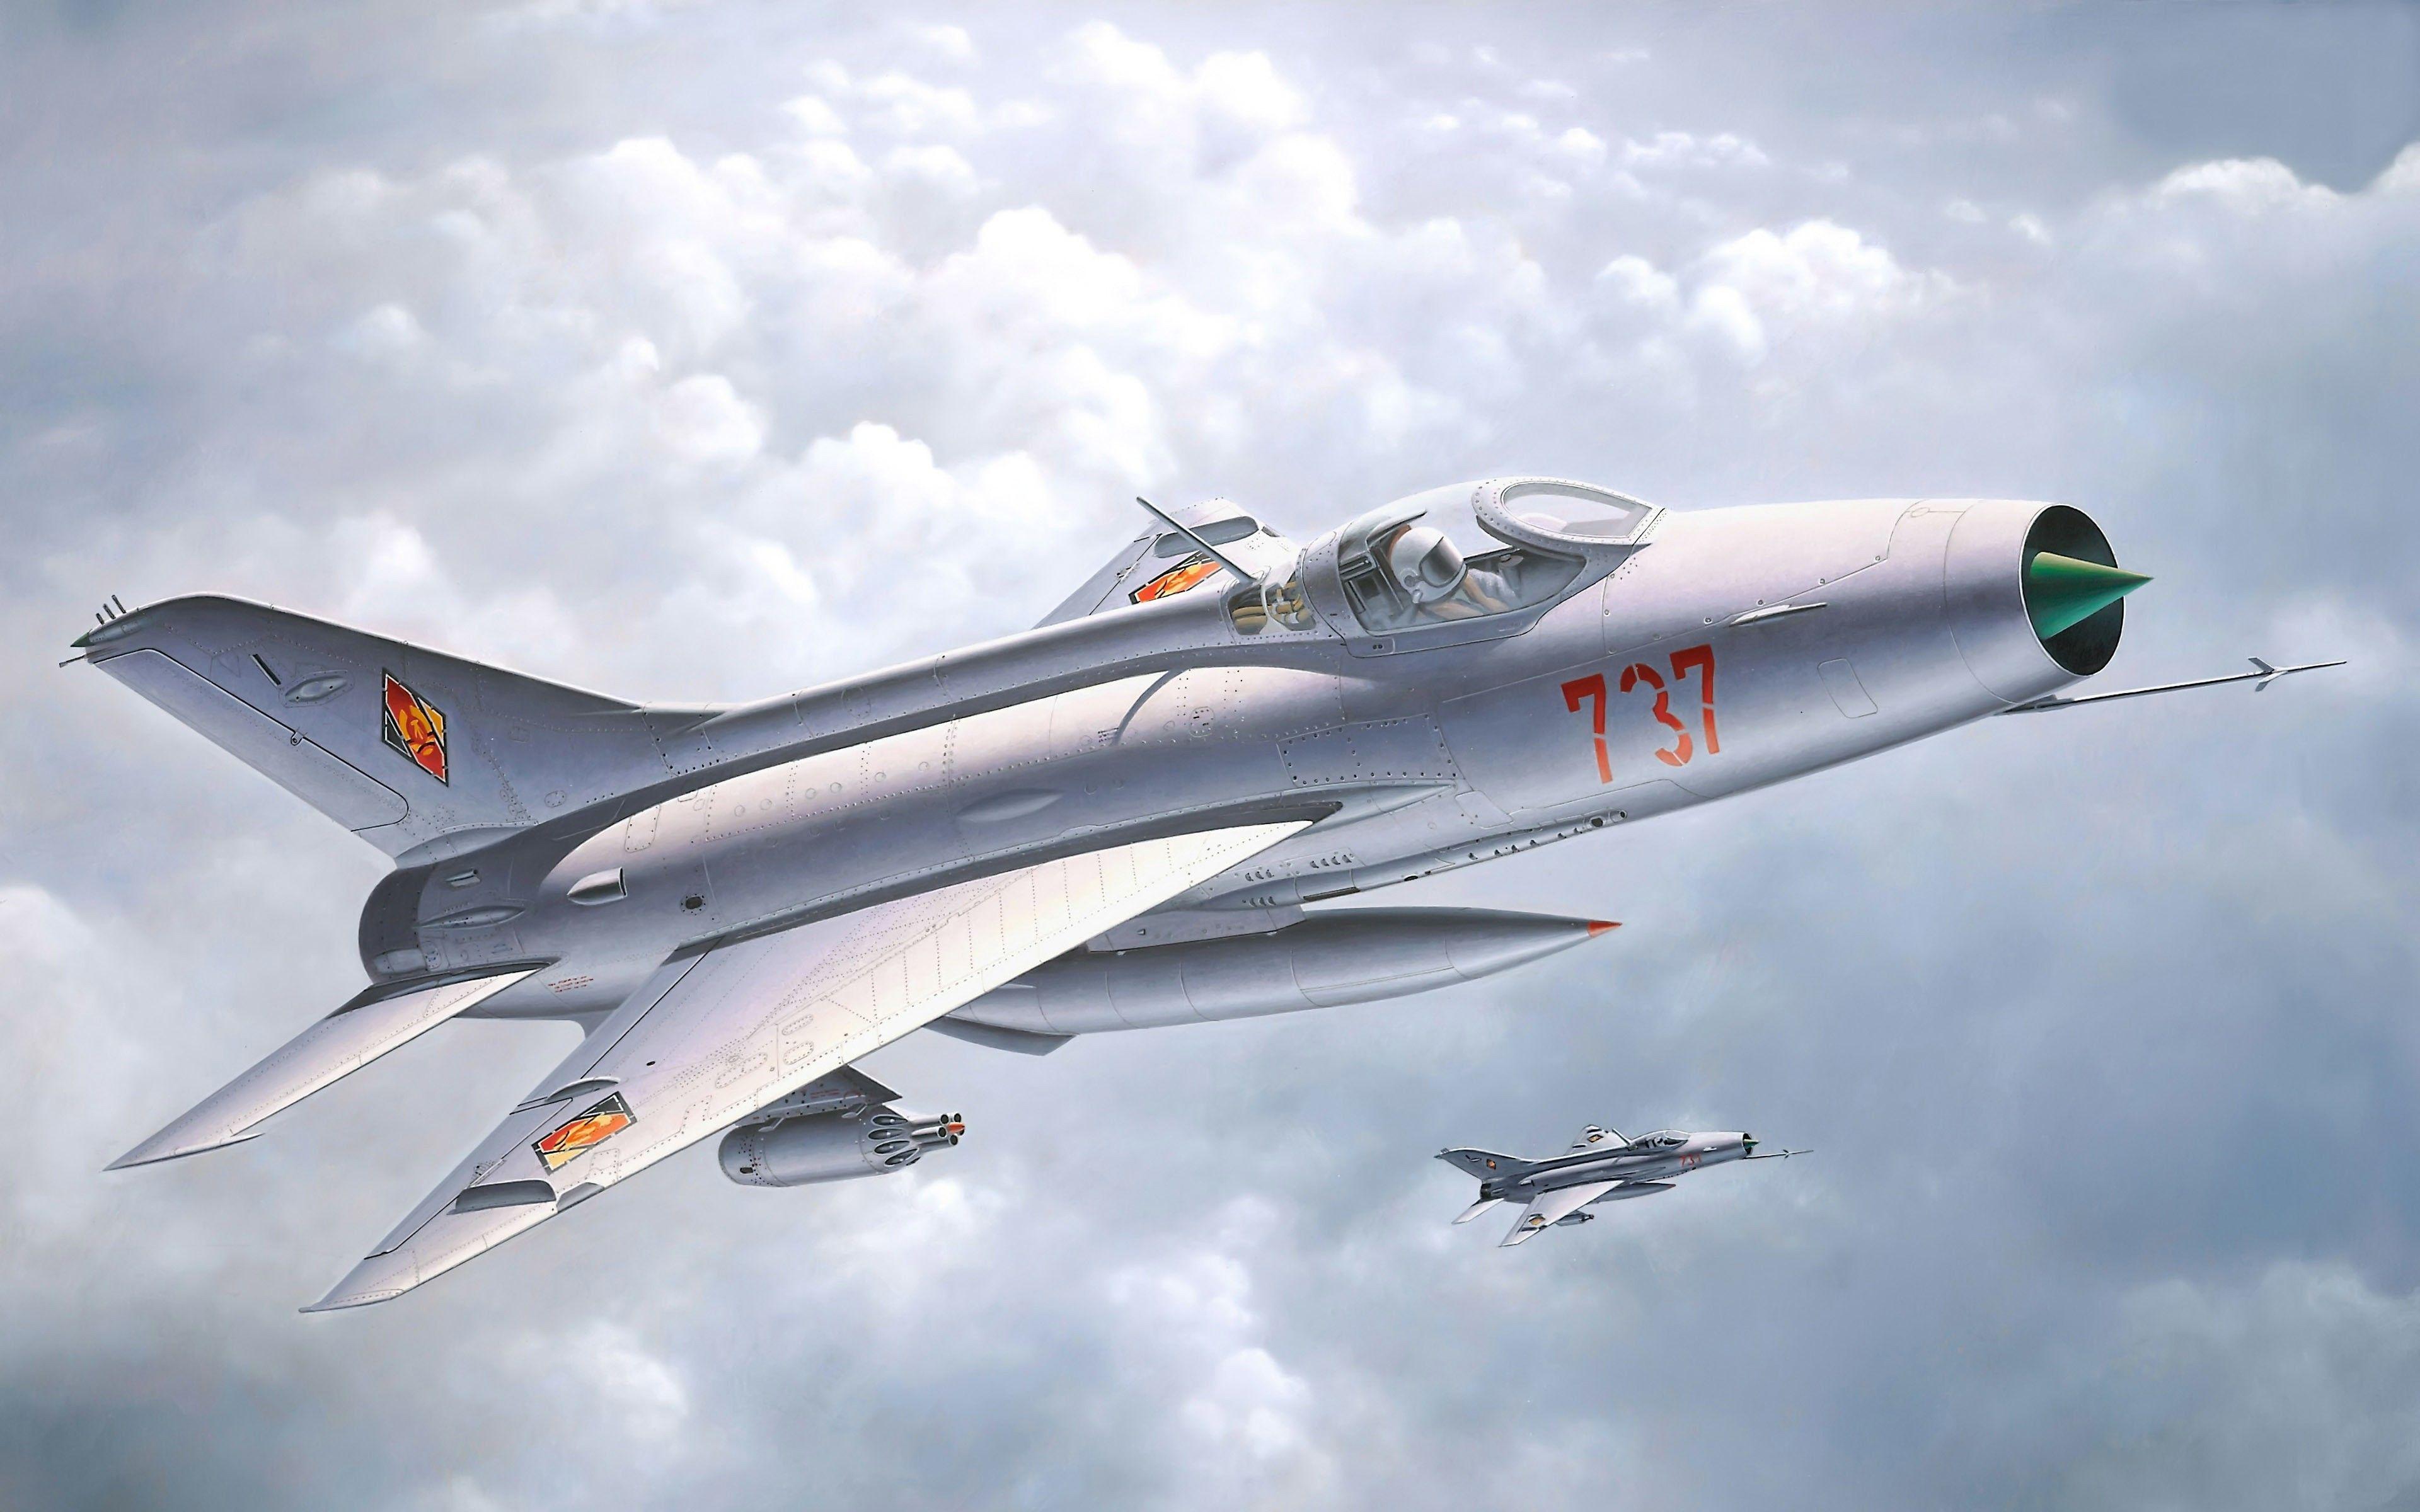 Mikoyan Gurevich MiG 21 Wallpaper. Mikoyan Gurevich MiG 21